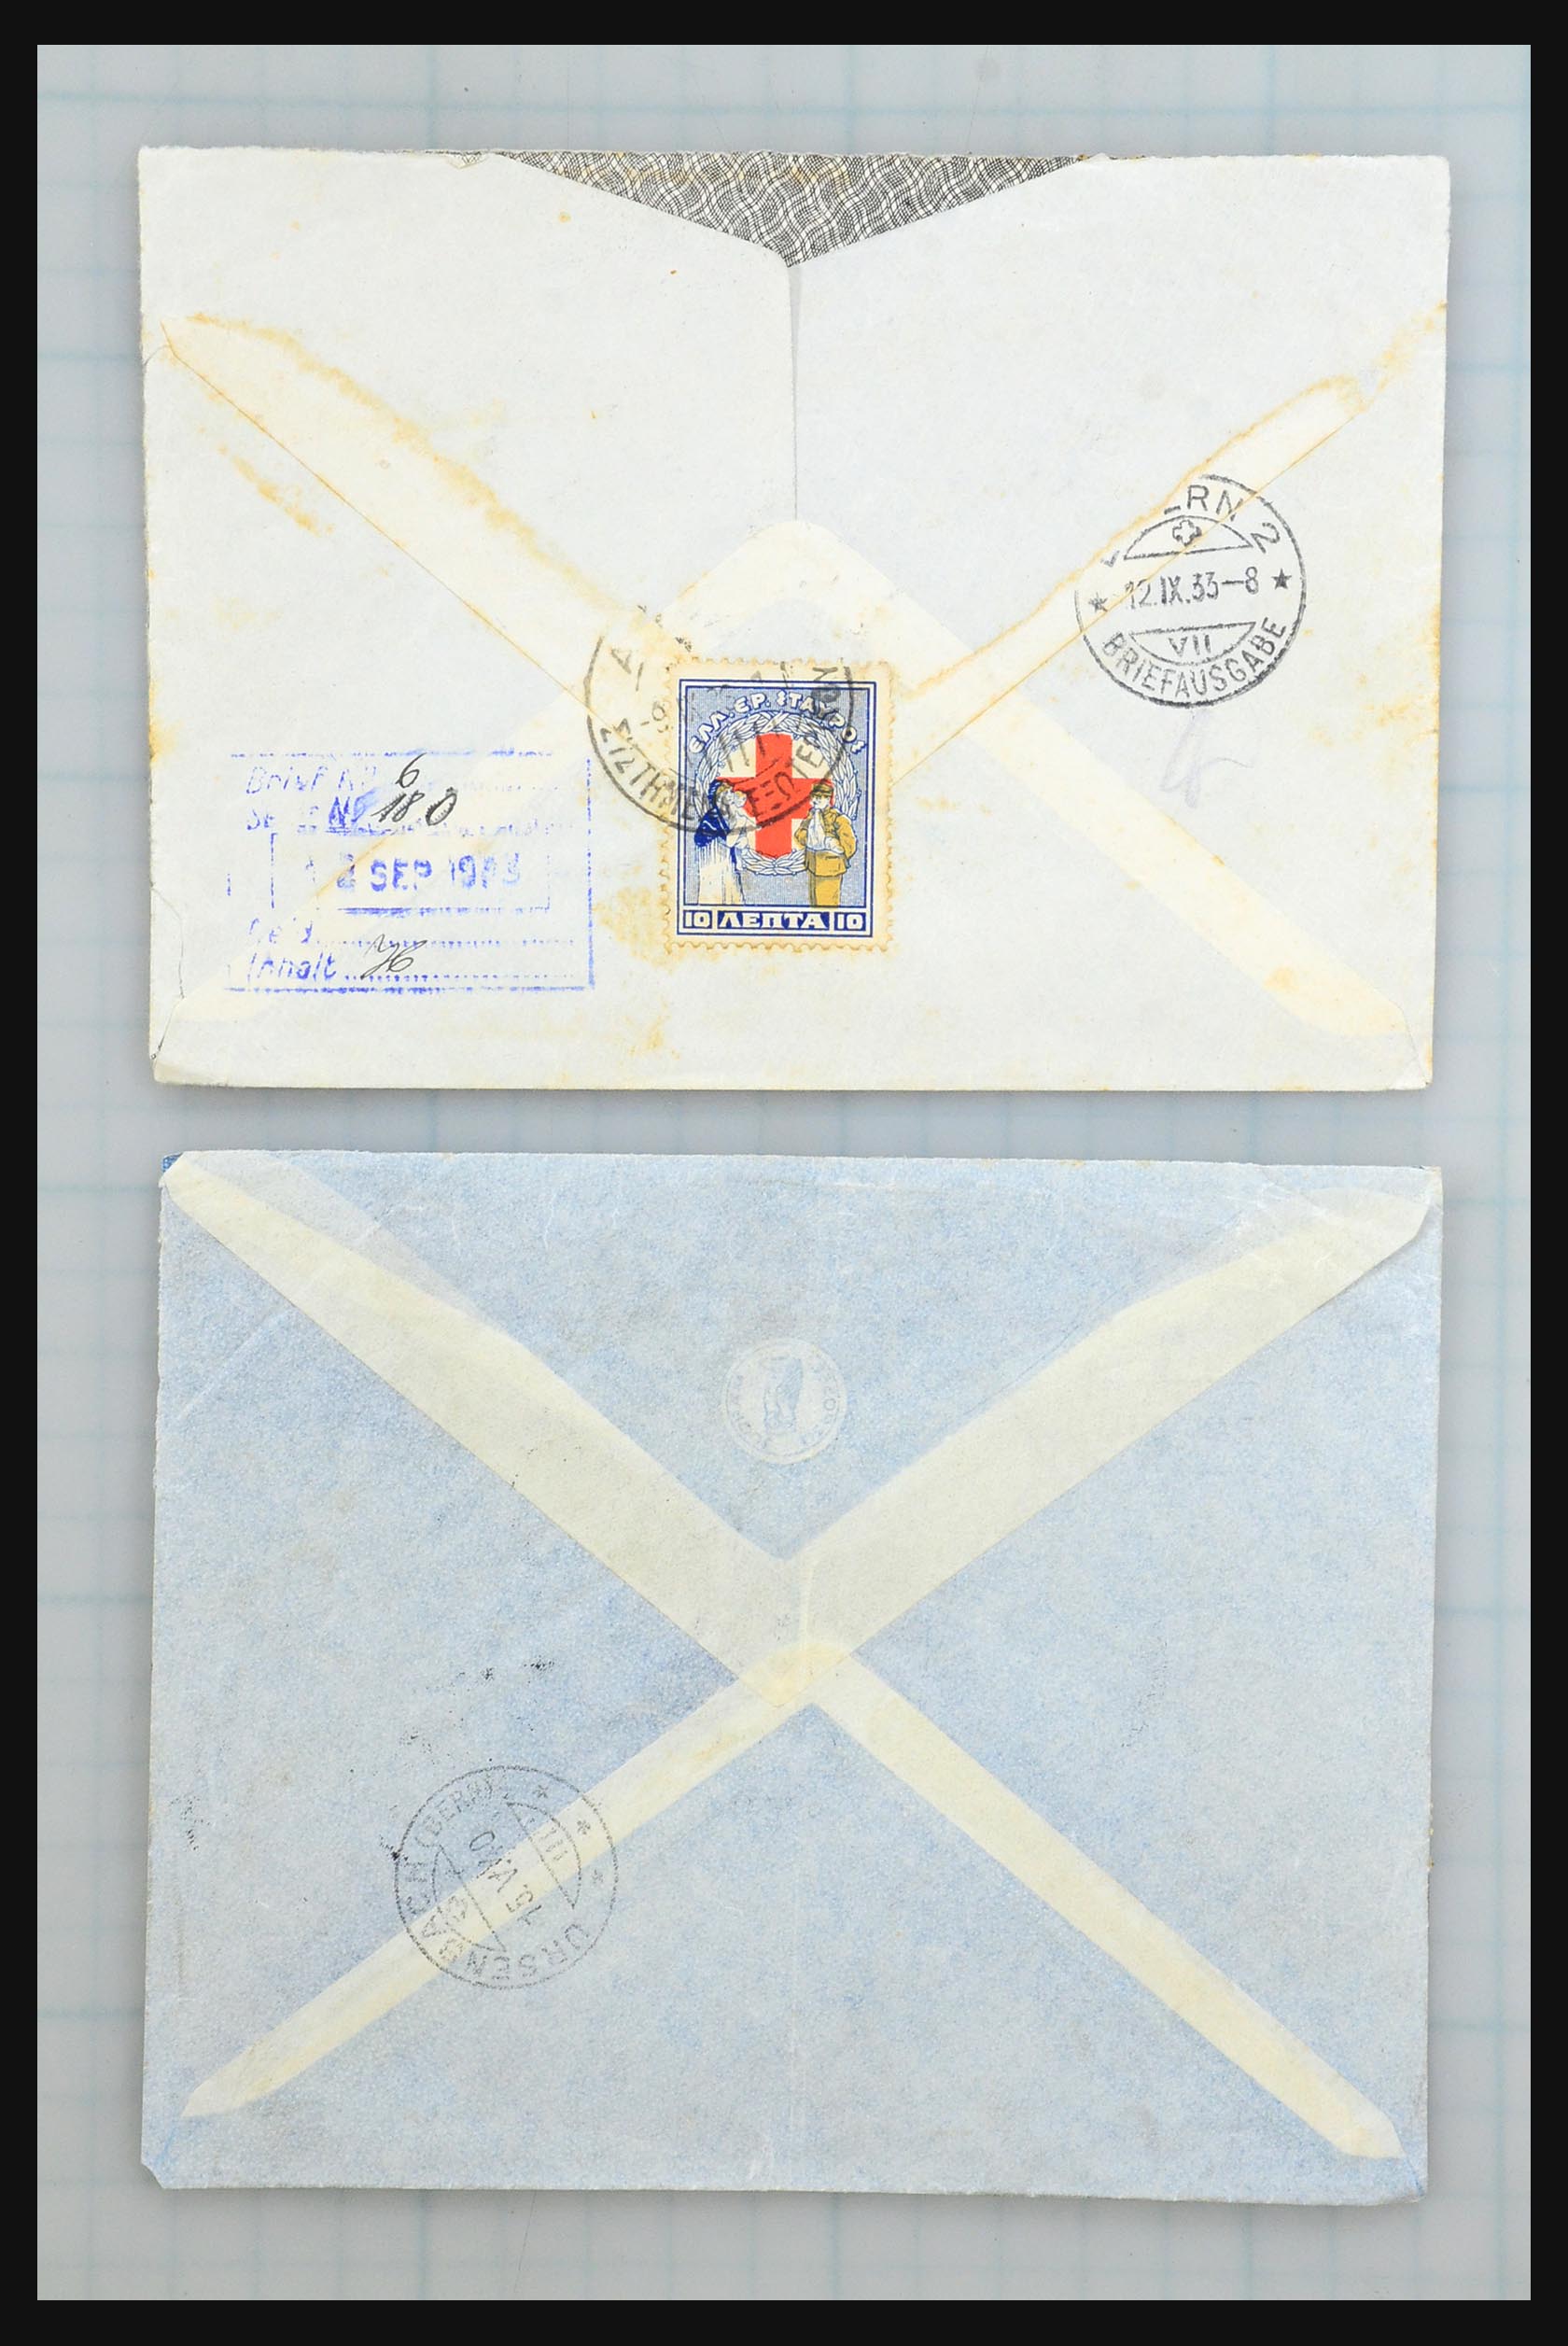 31358 019 - 31358 Portugal/Luxemburg/Griekenland brieven 1880-1960.